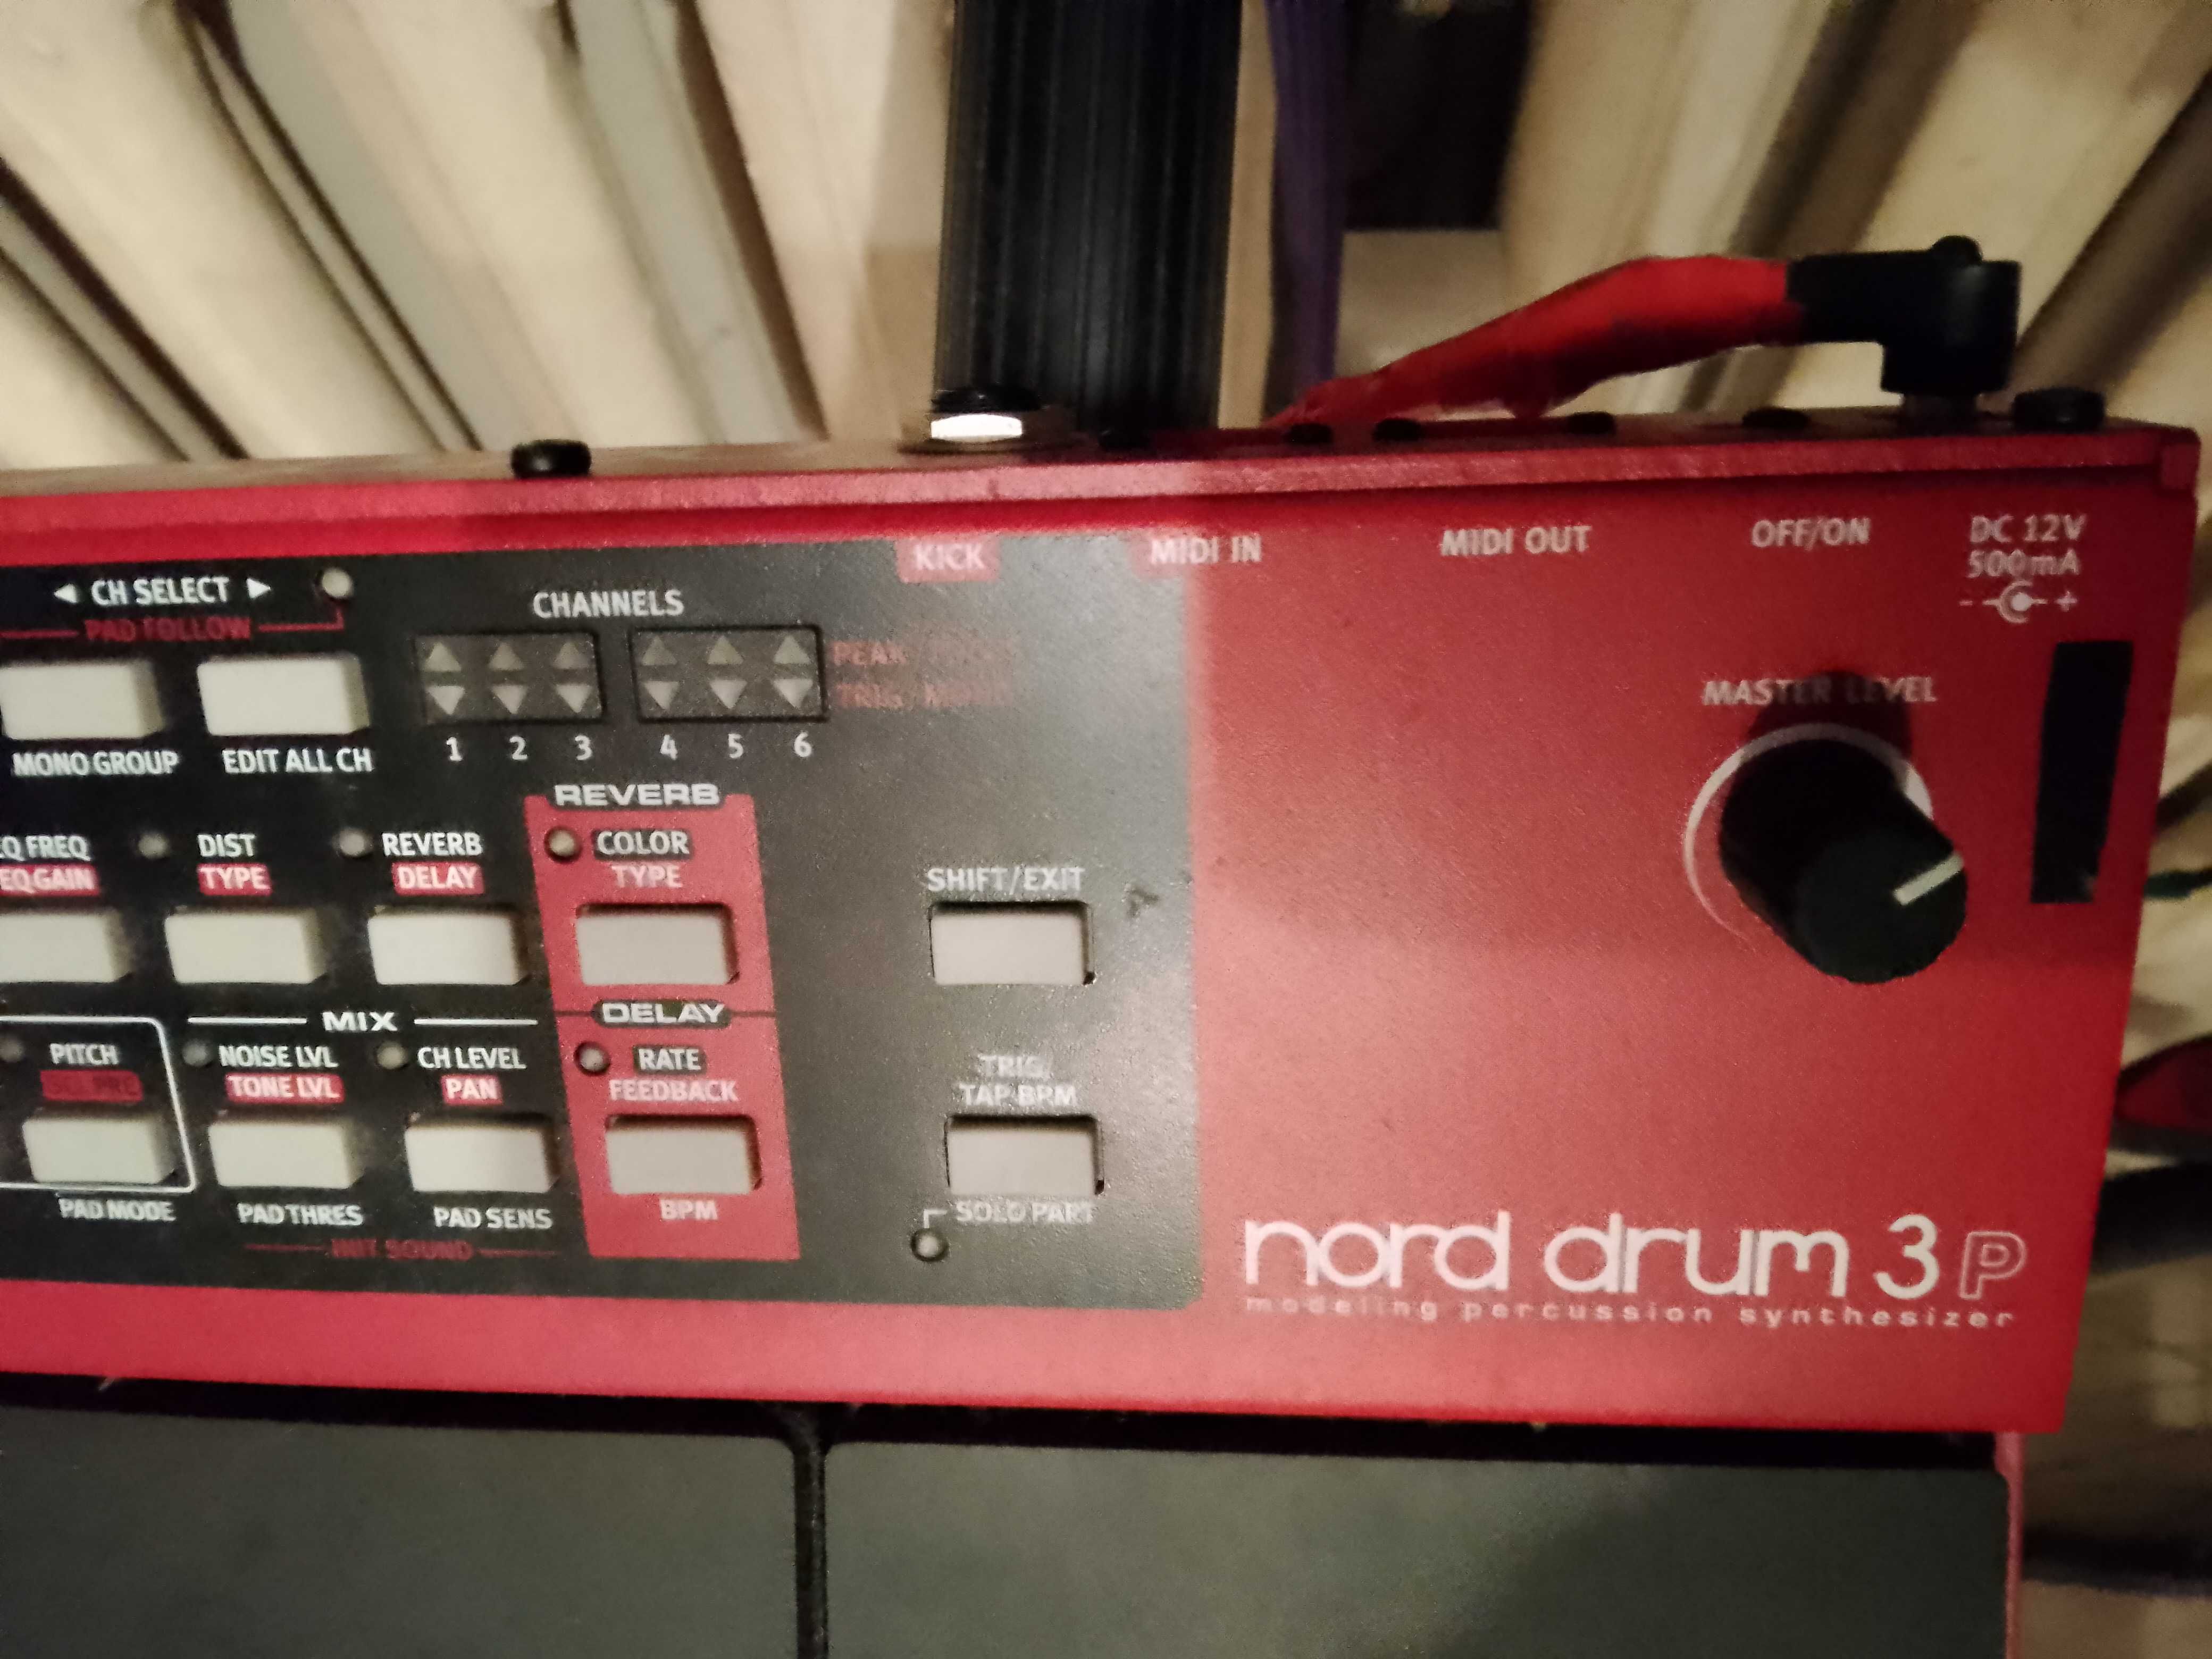 Nord Drum 3p perkusja elektroniczna pady perkusyjne - stan bdb